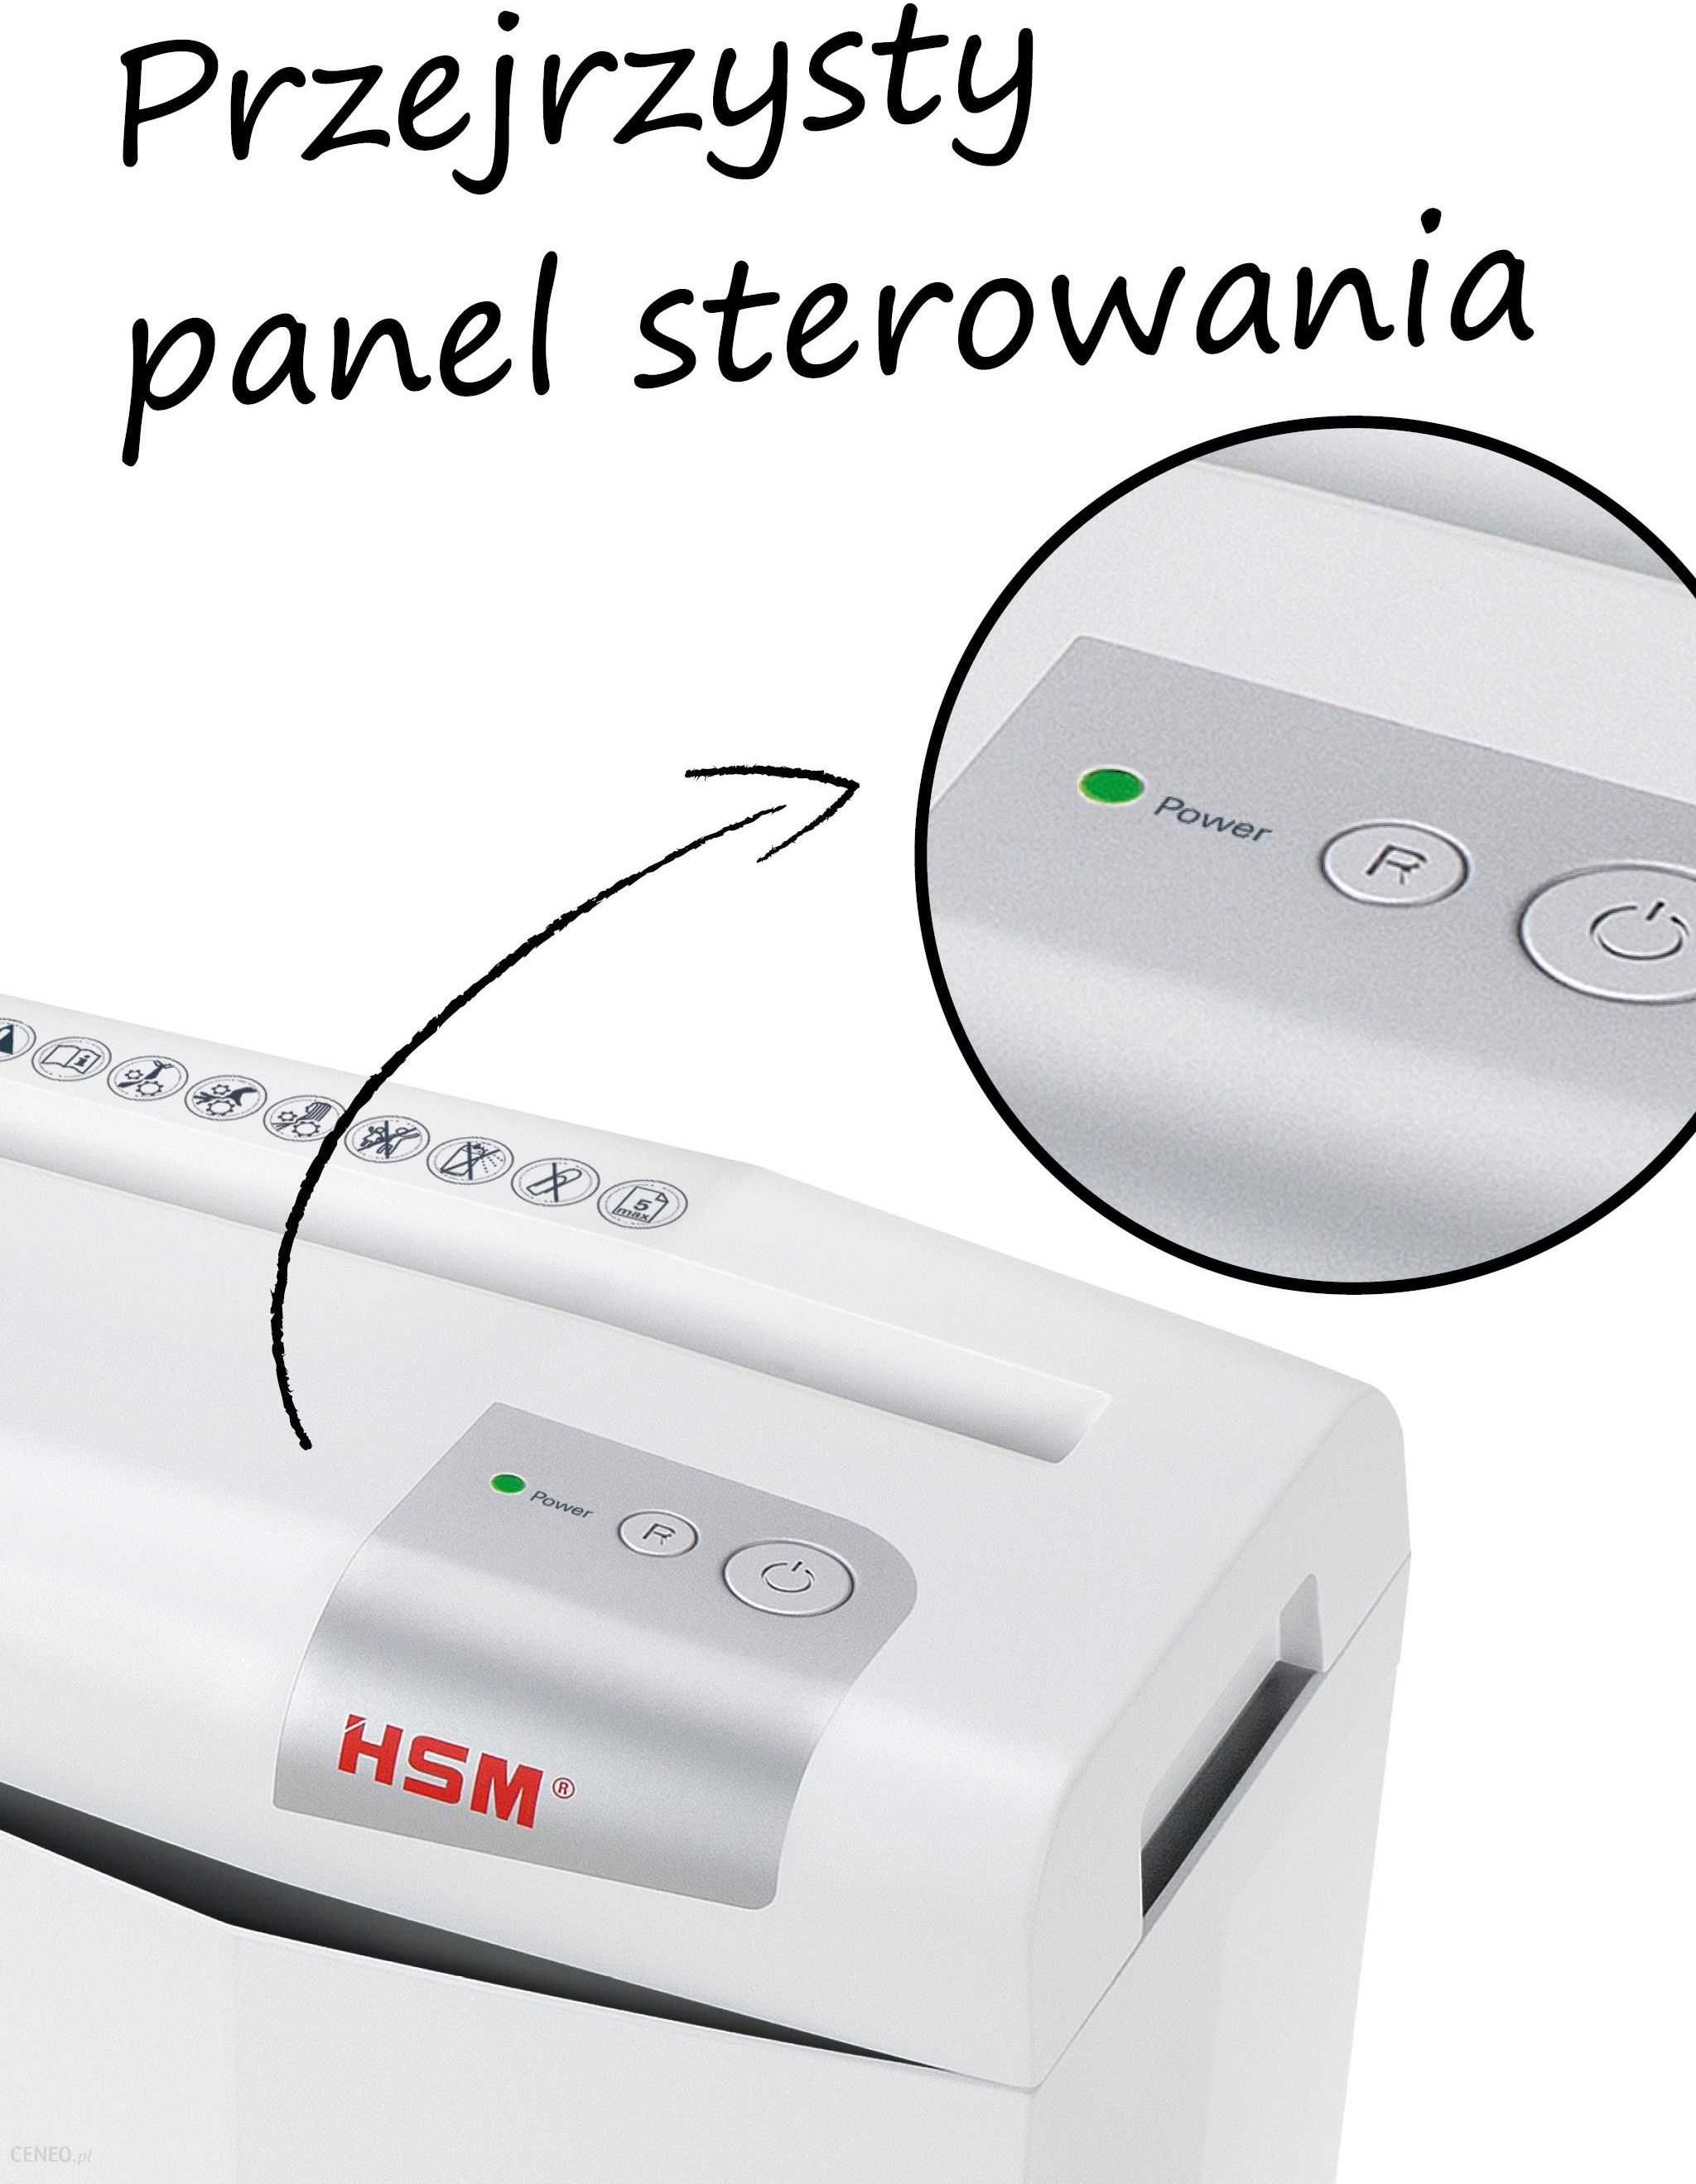 HSM shredstar S5 6mm